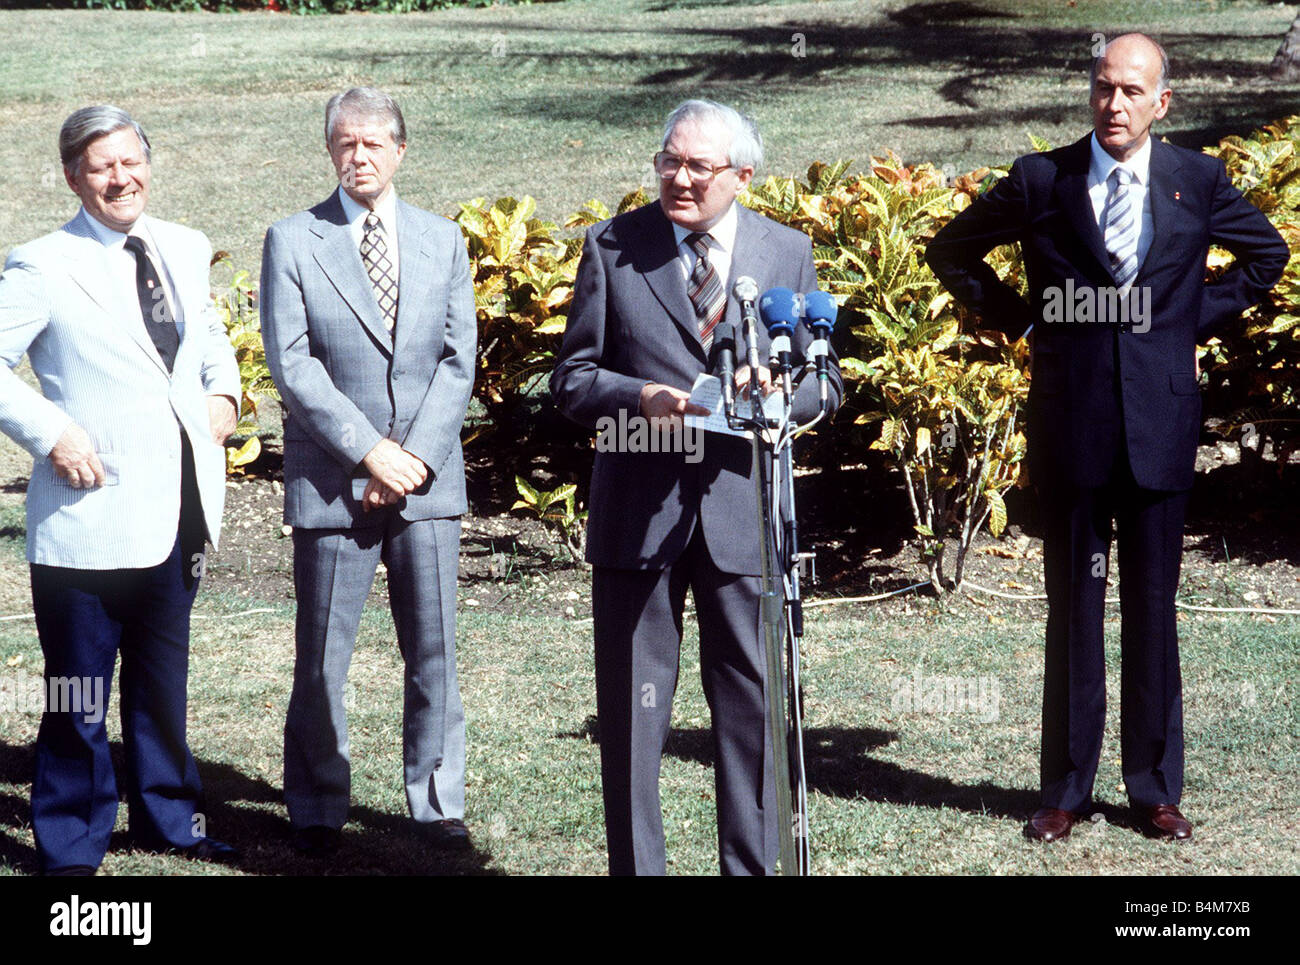 Premierminister James Callaghan Labour Addreses eines Spitzengesprächs mit Präsident Carter D Estaing und Bundeskanzler Schmidt im Hintergrund Stockfoto